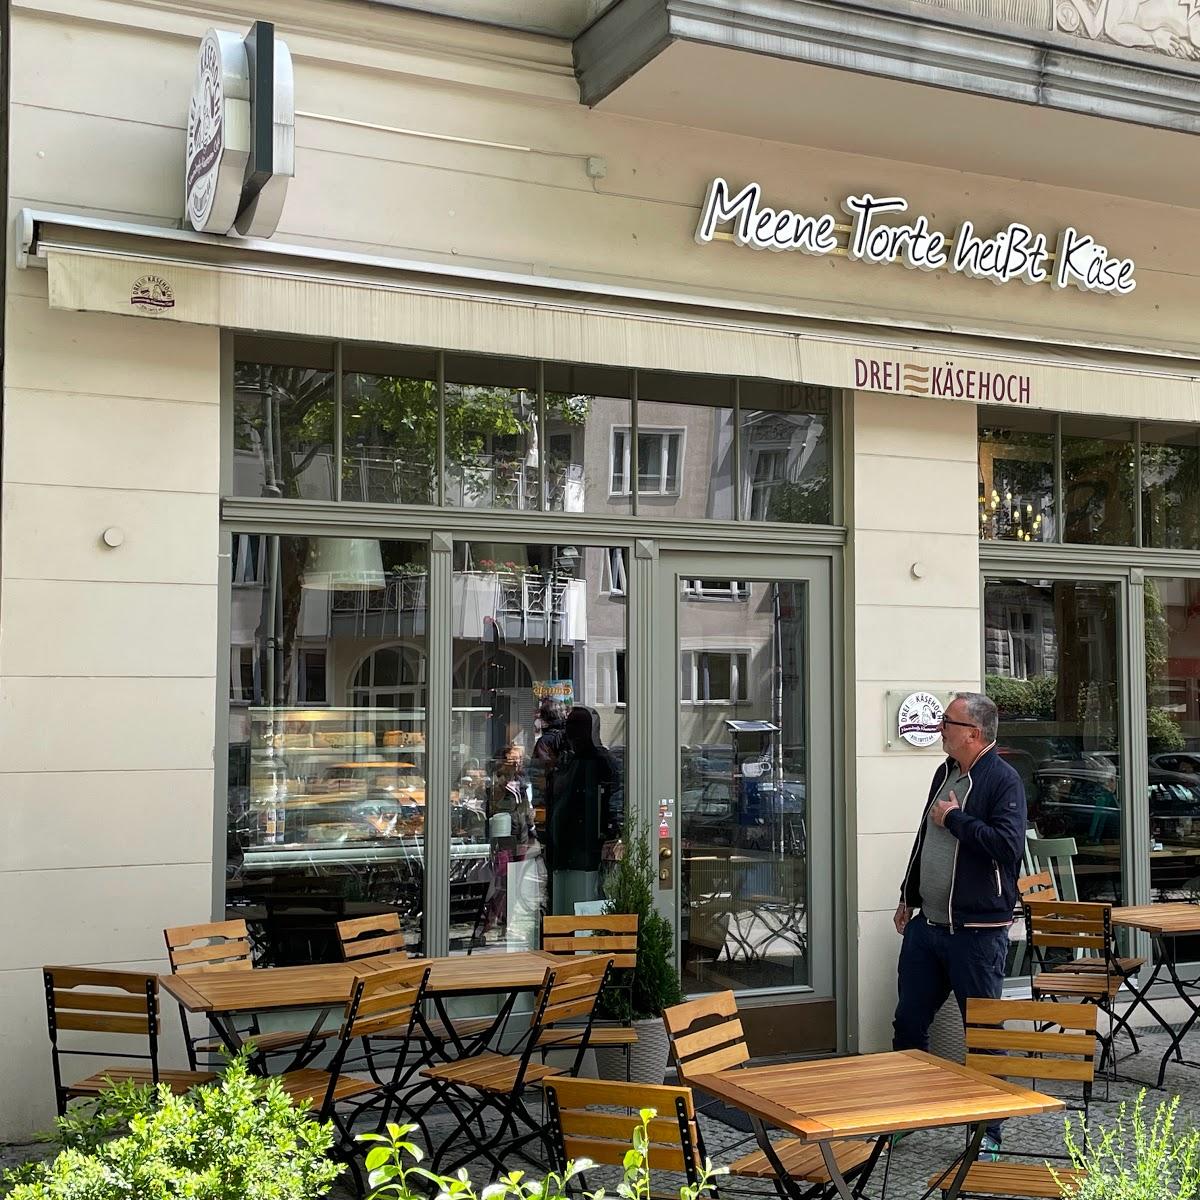 Restaurant "Meene Torte heißt Käse" in Berlin